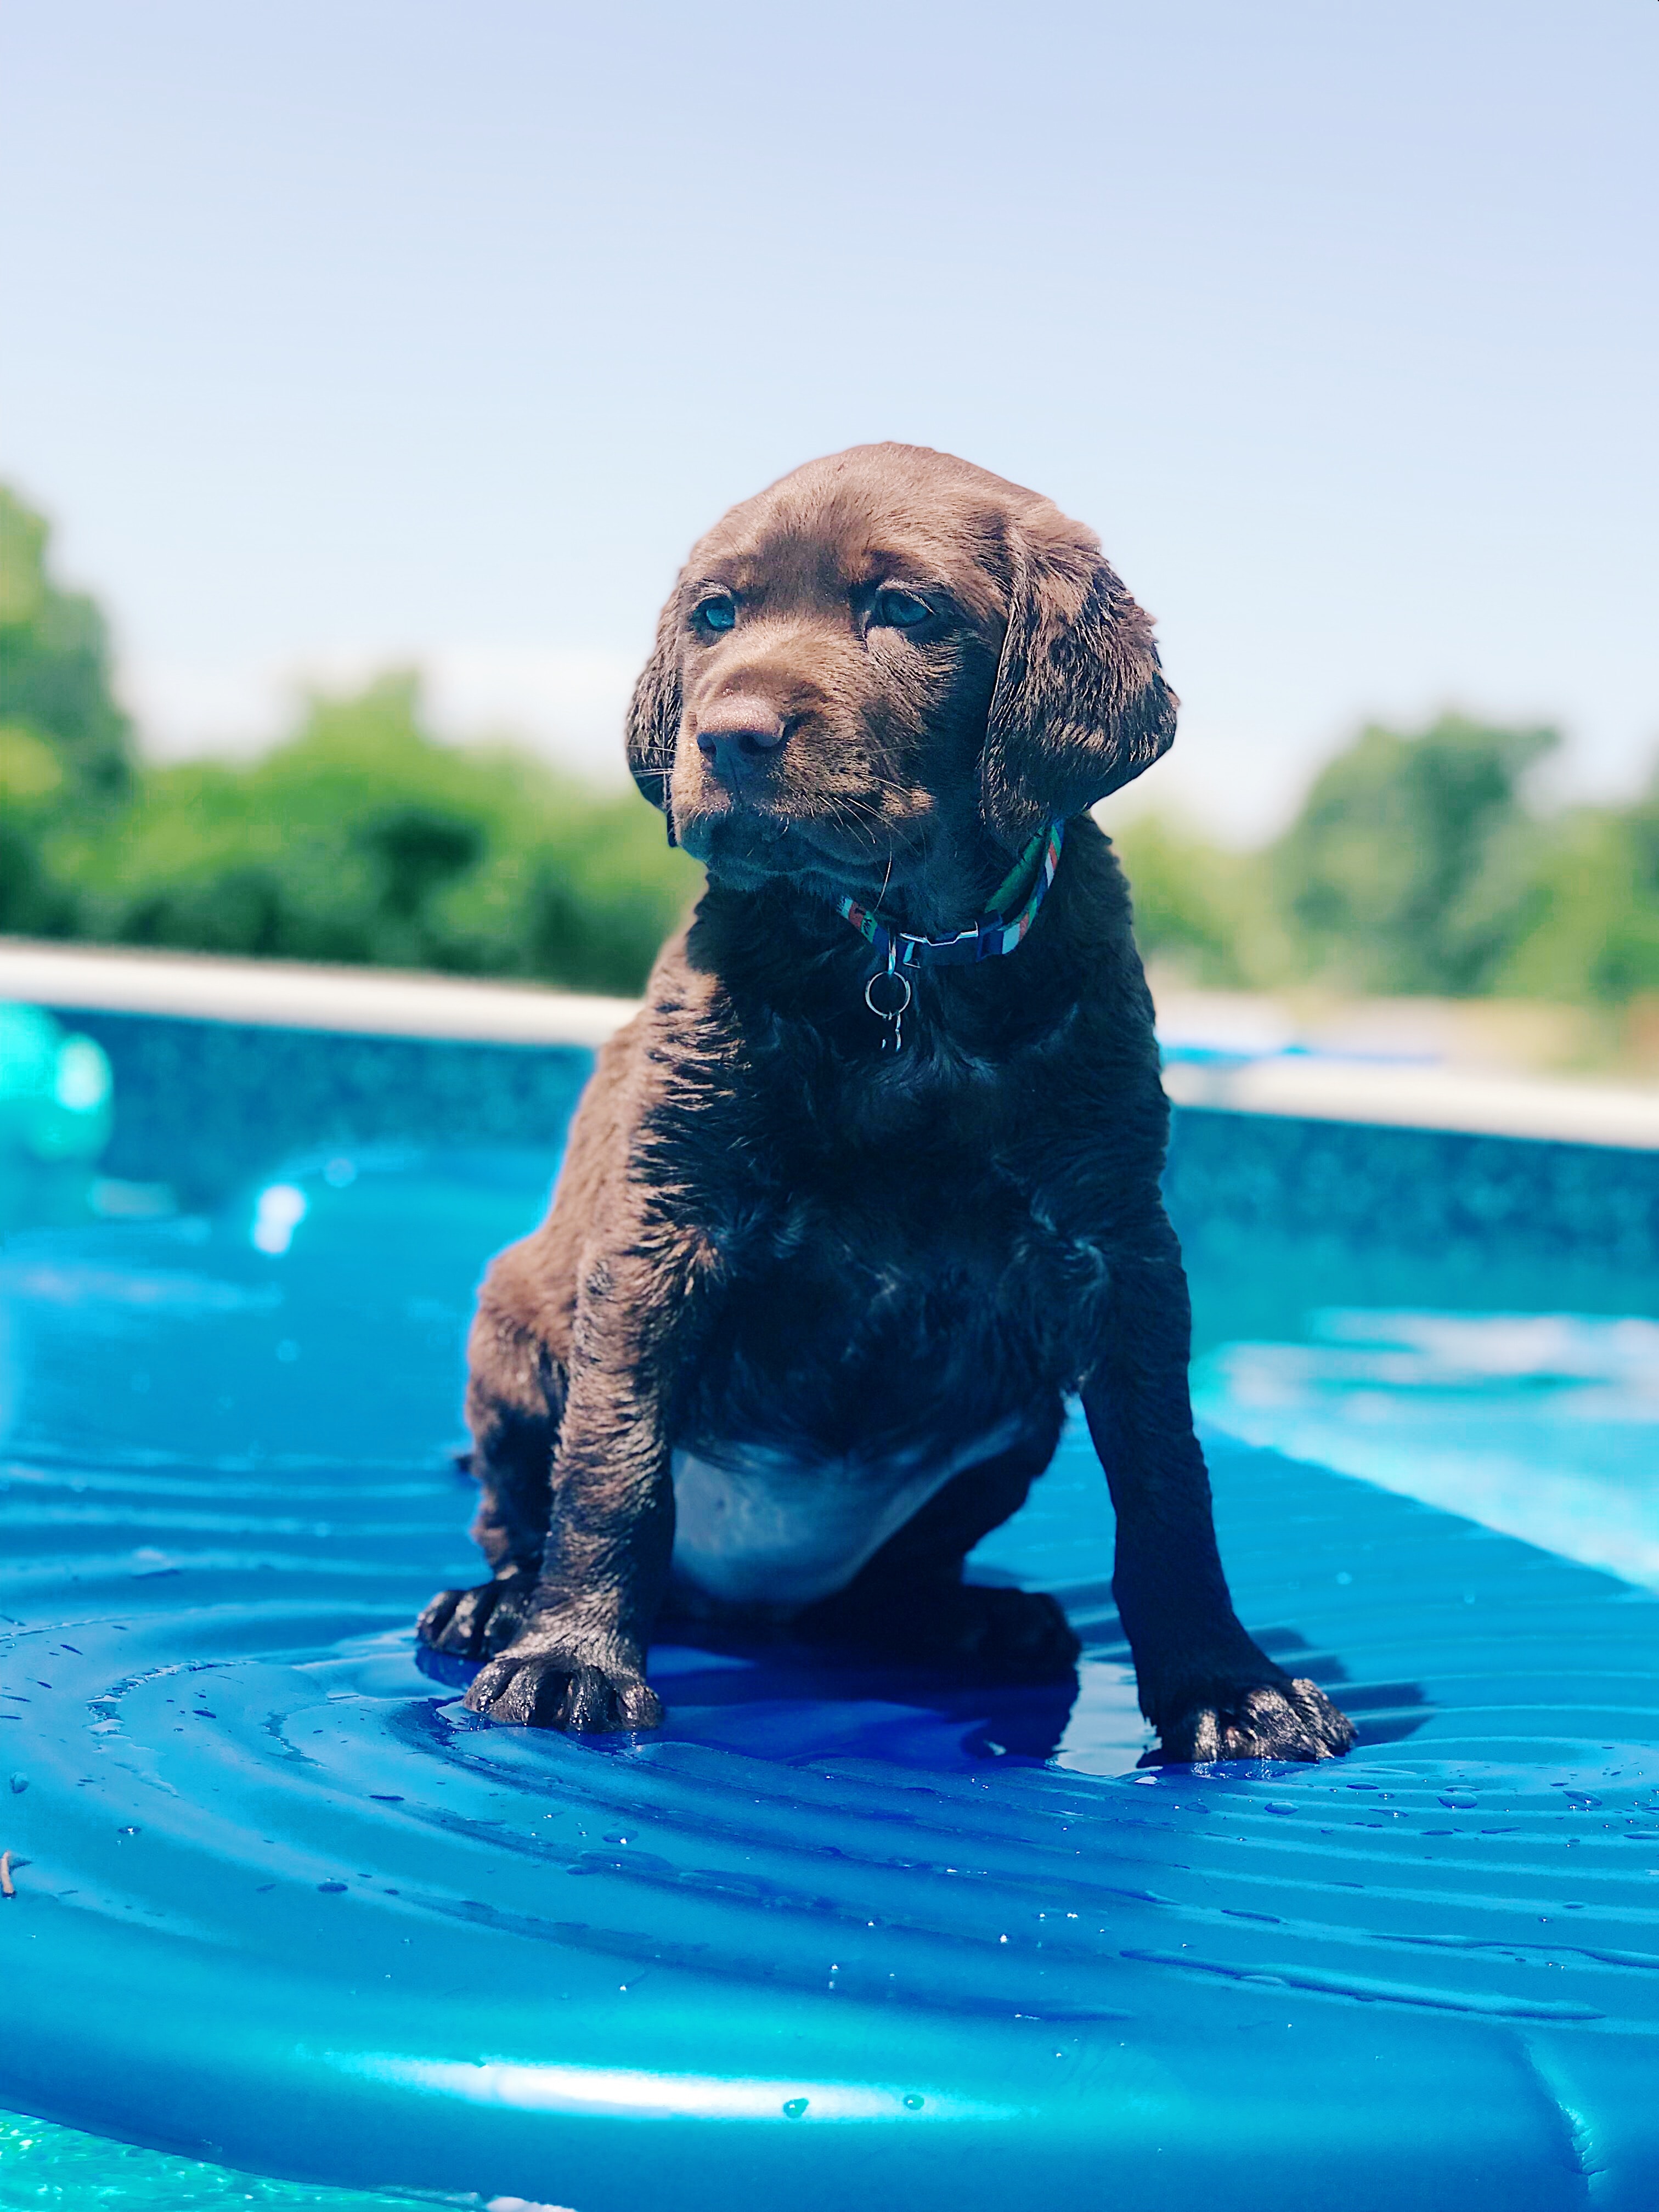 Es seguro meter a mi perro en piscina? - Blog Outlet Piscinas